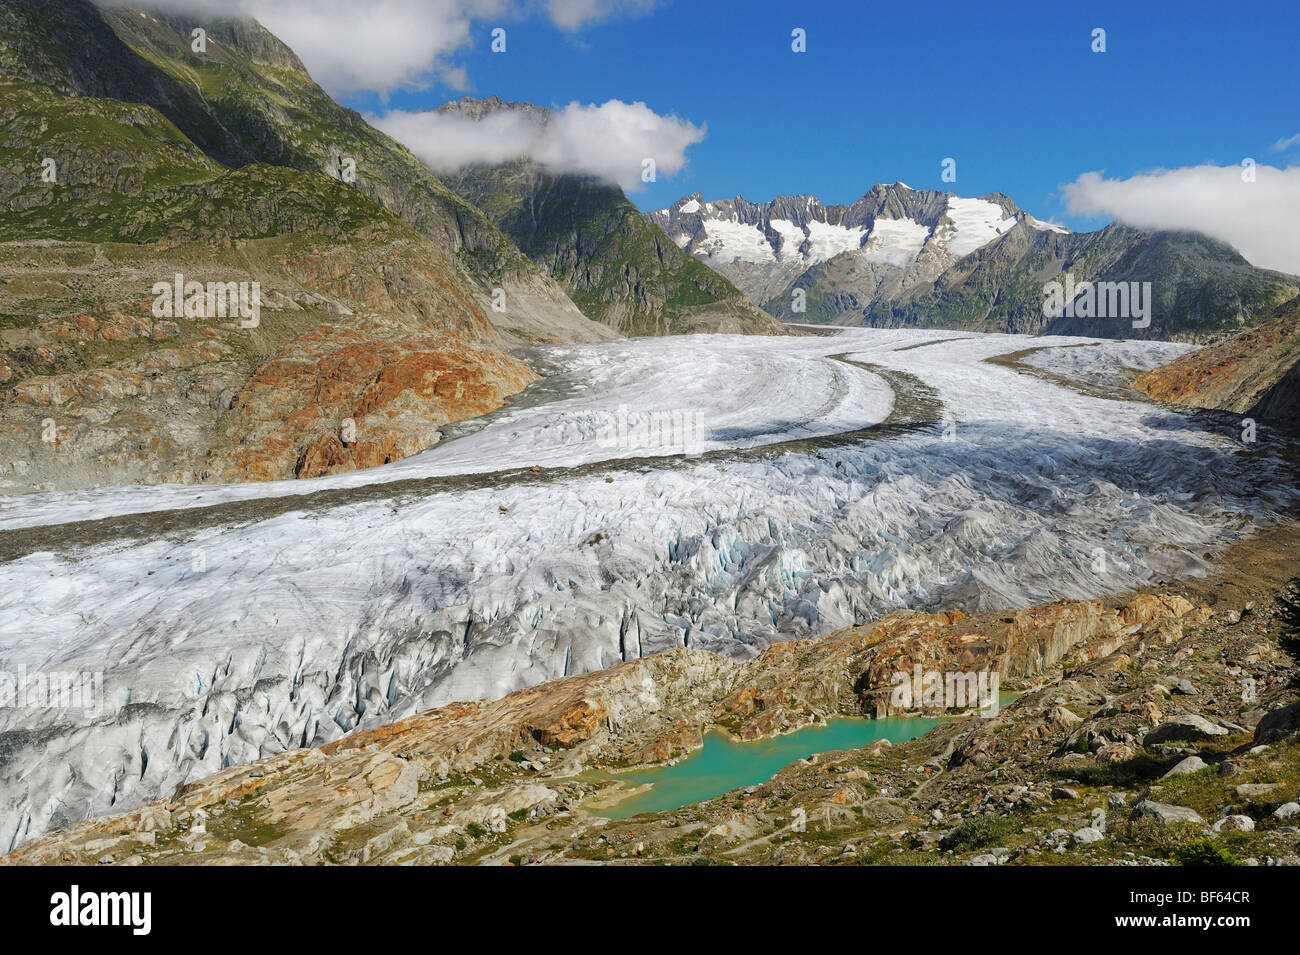 Glacier d'Aletsch, classé au Patrimoine Mondial de l'UNESCO Jungfrau-Aletsch-Bietschhorn, Conthey, Valais, Suisse, Europe Banque D'Images